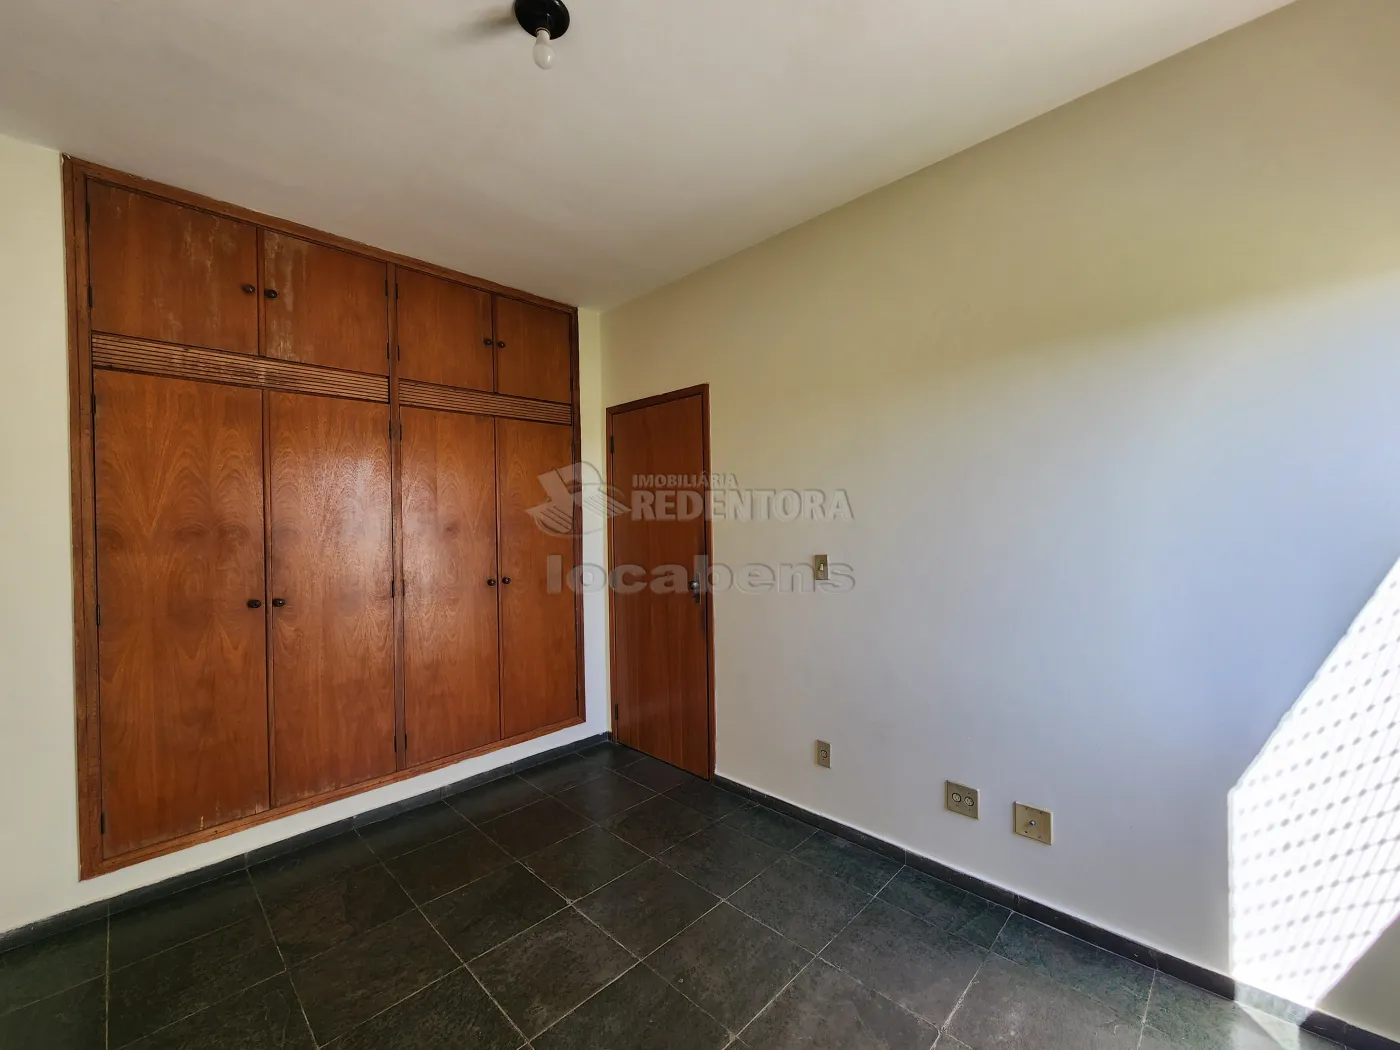 Alugar Apartamento / Padrão em São José do Rio Preto apenas R$ 1.100,00 - Foto 6